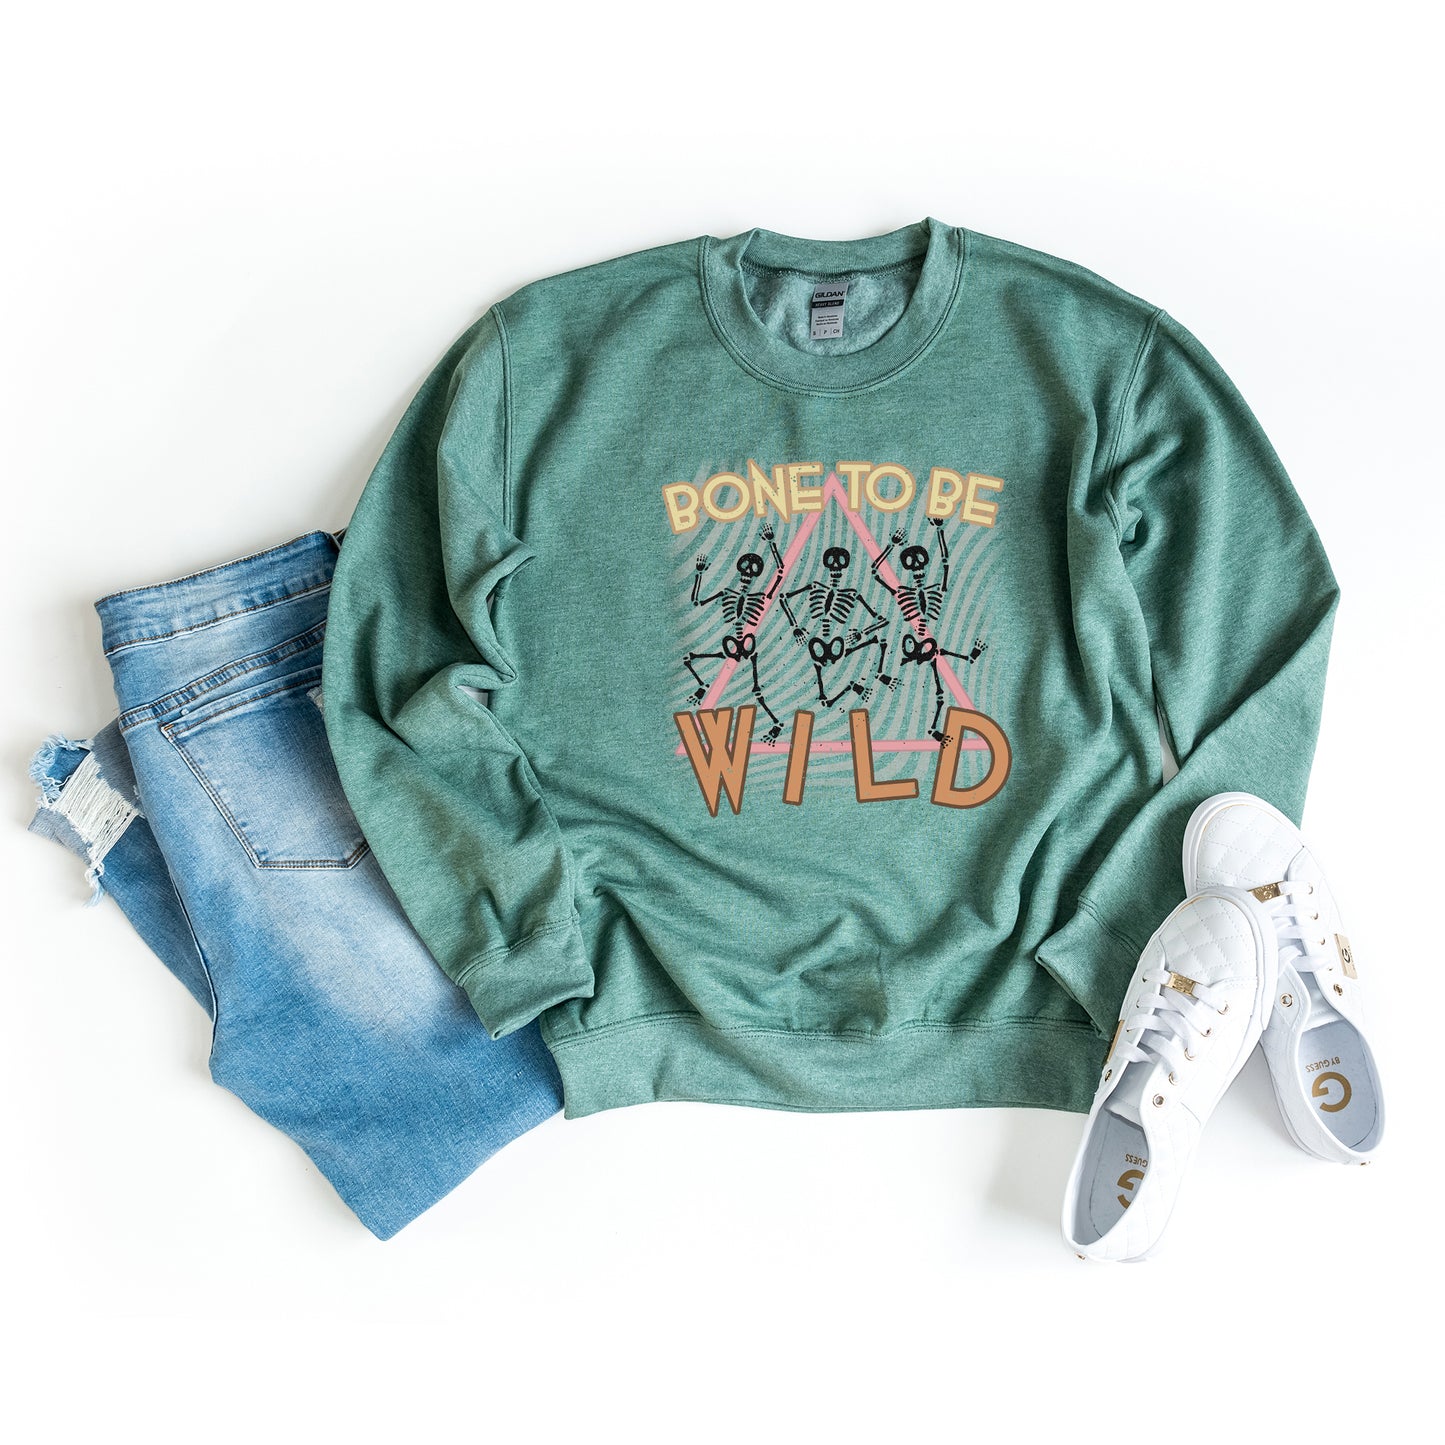 Bone To Be Wild | Sweatshirt